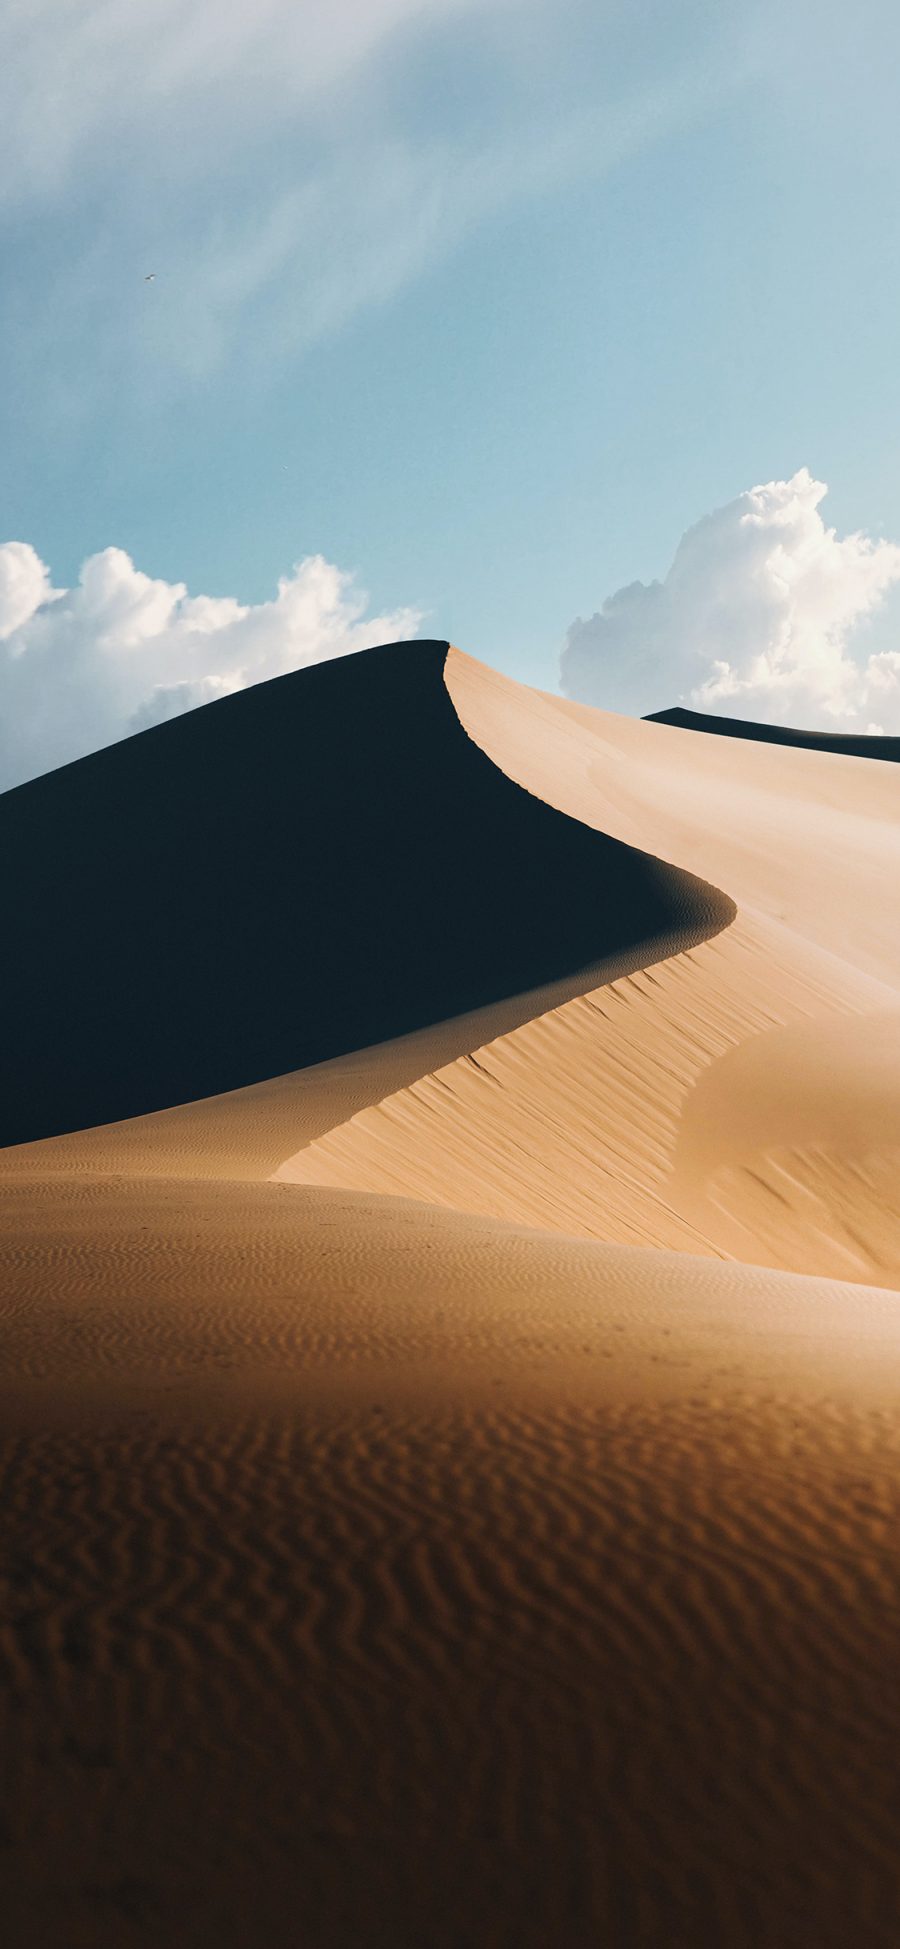 [2436×1125]沙漠 荒漠 云彩 沙丘 苹果手机壁纸图片